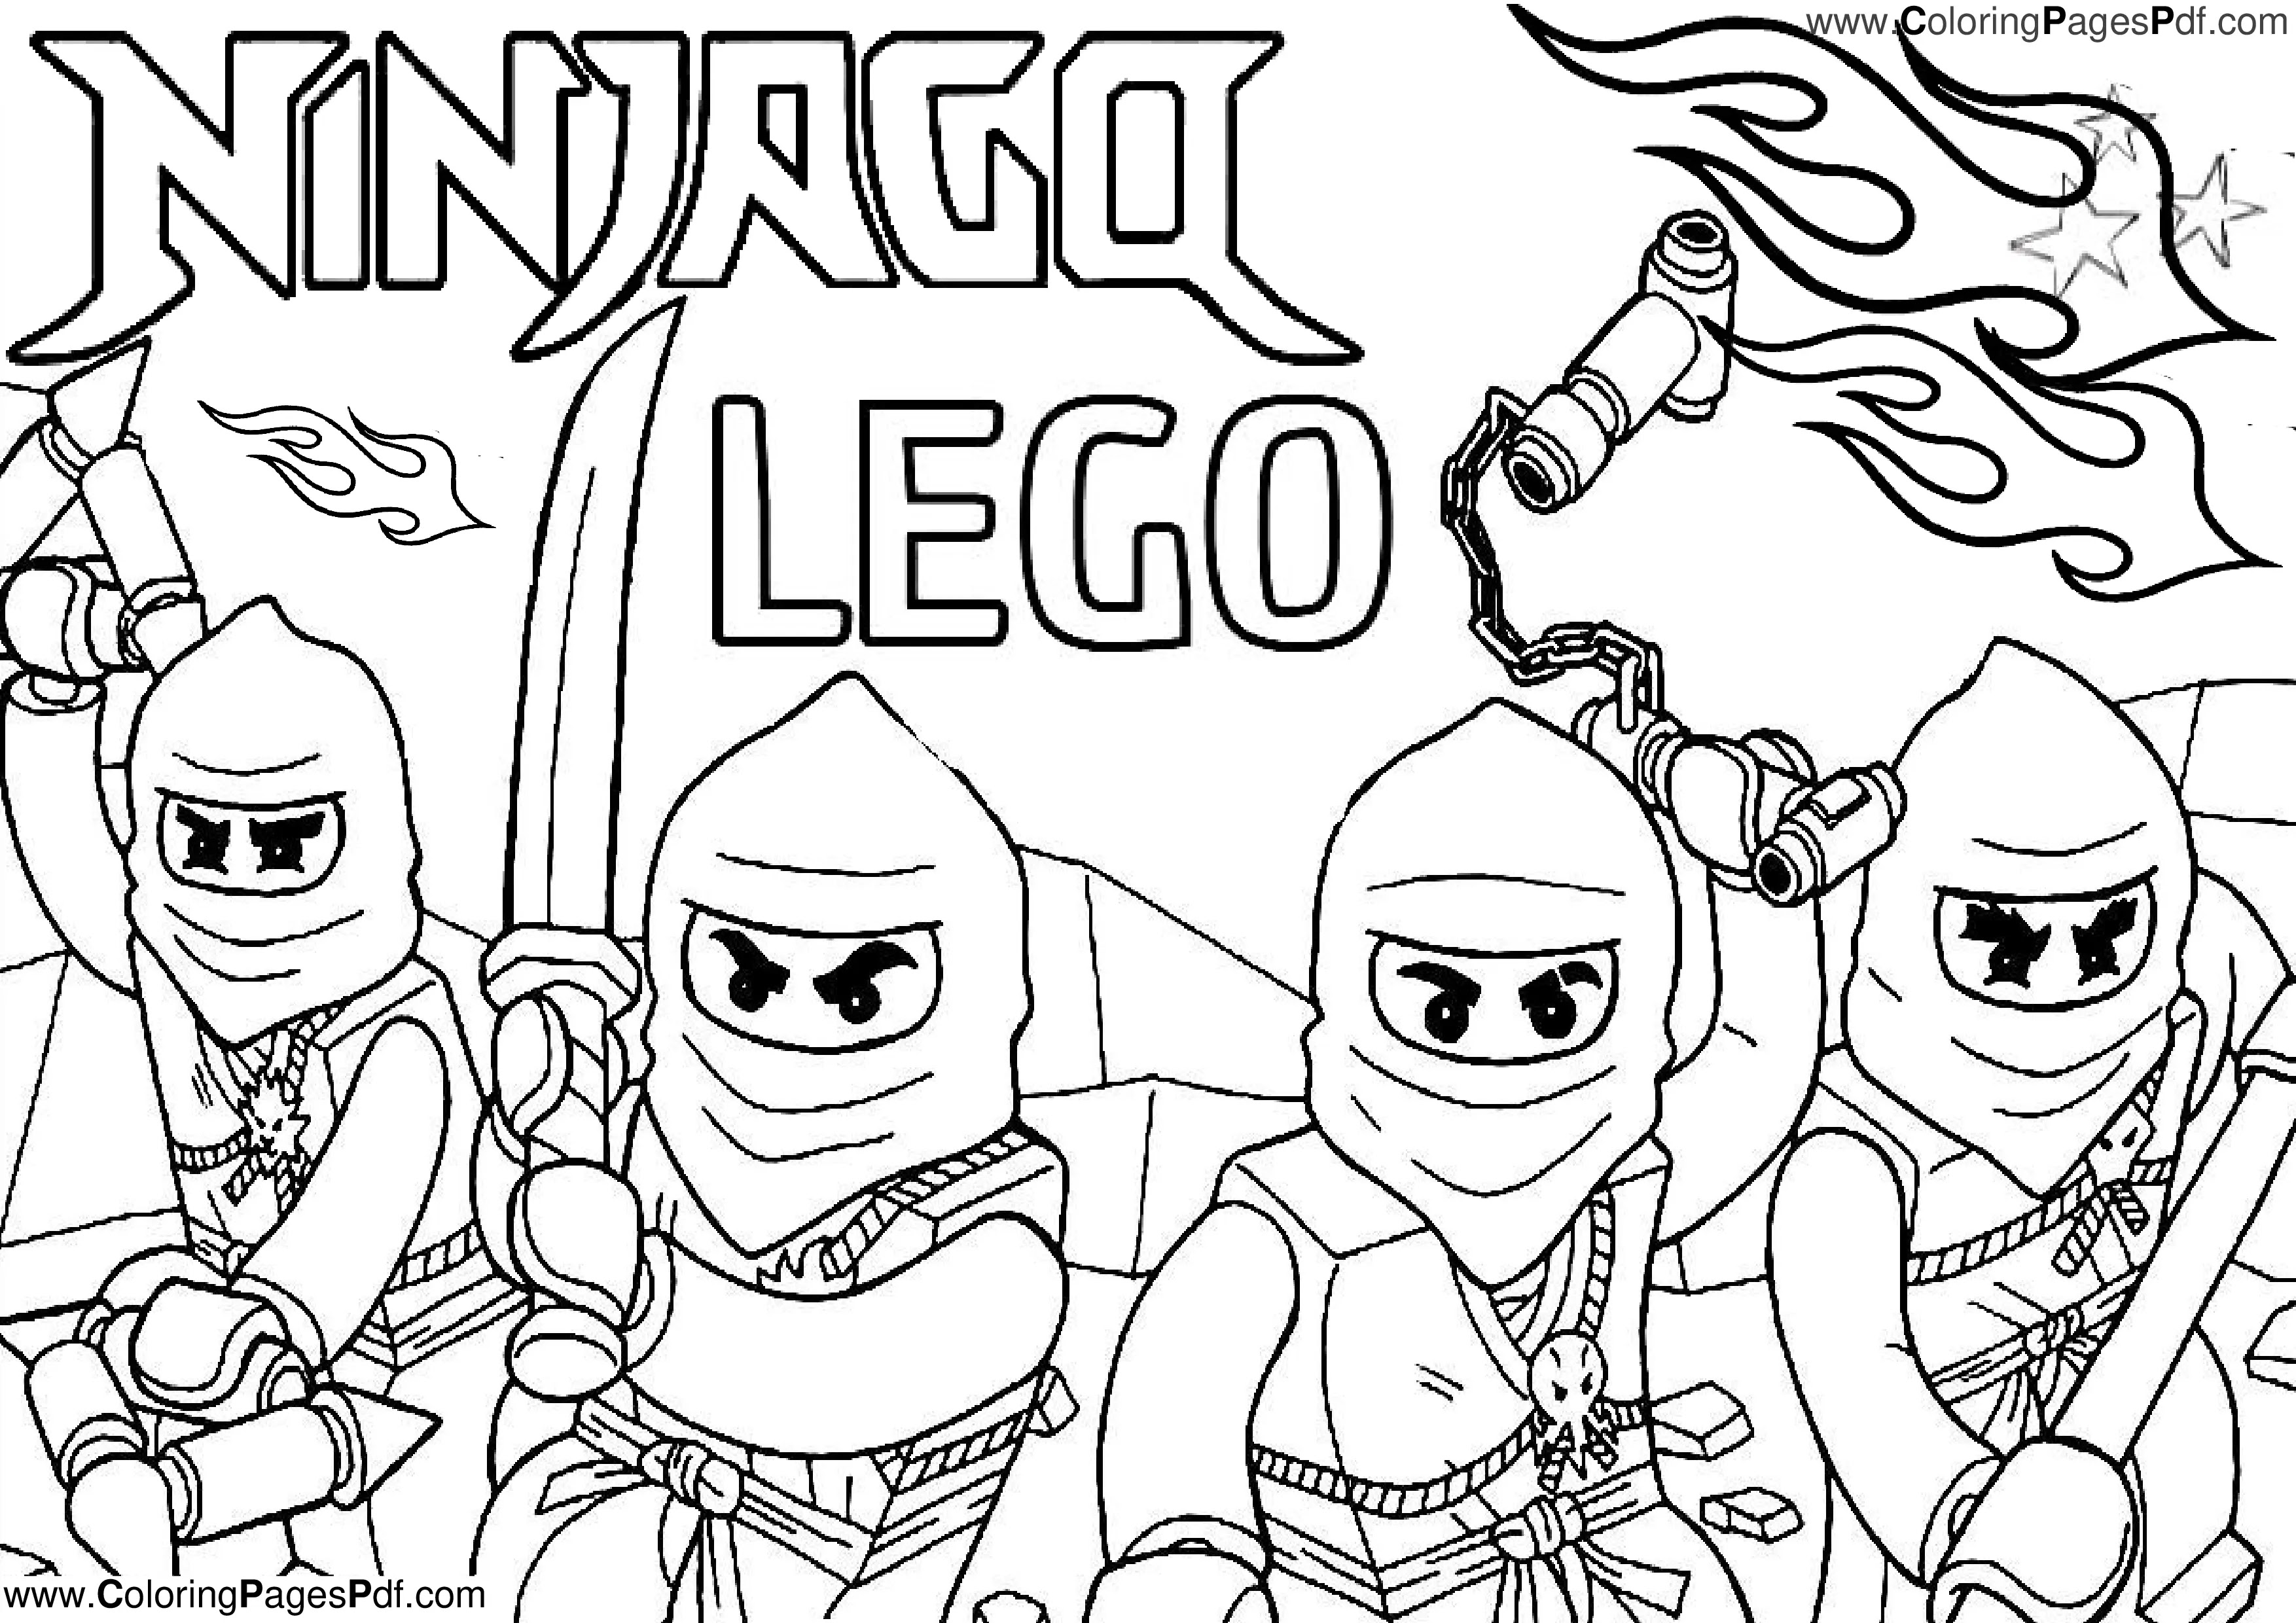 Ninjago coloring pages S11